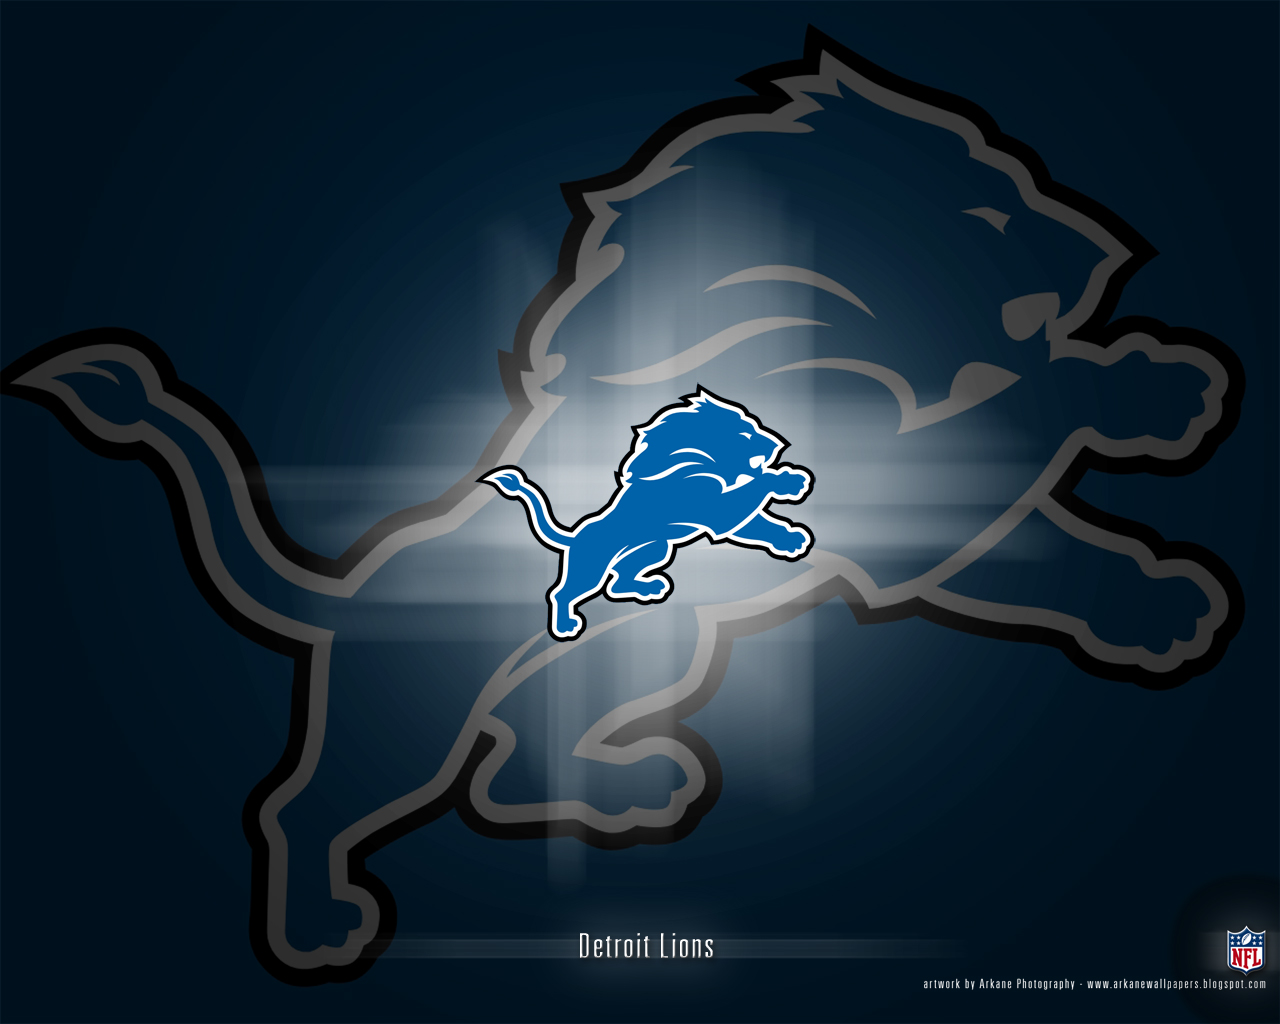 1000+ images about Detroit Lions stuff on Pinterest | Logos